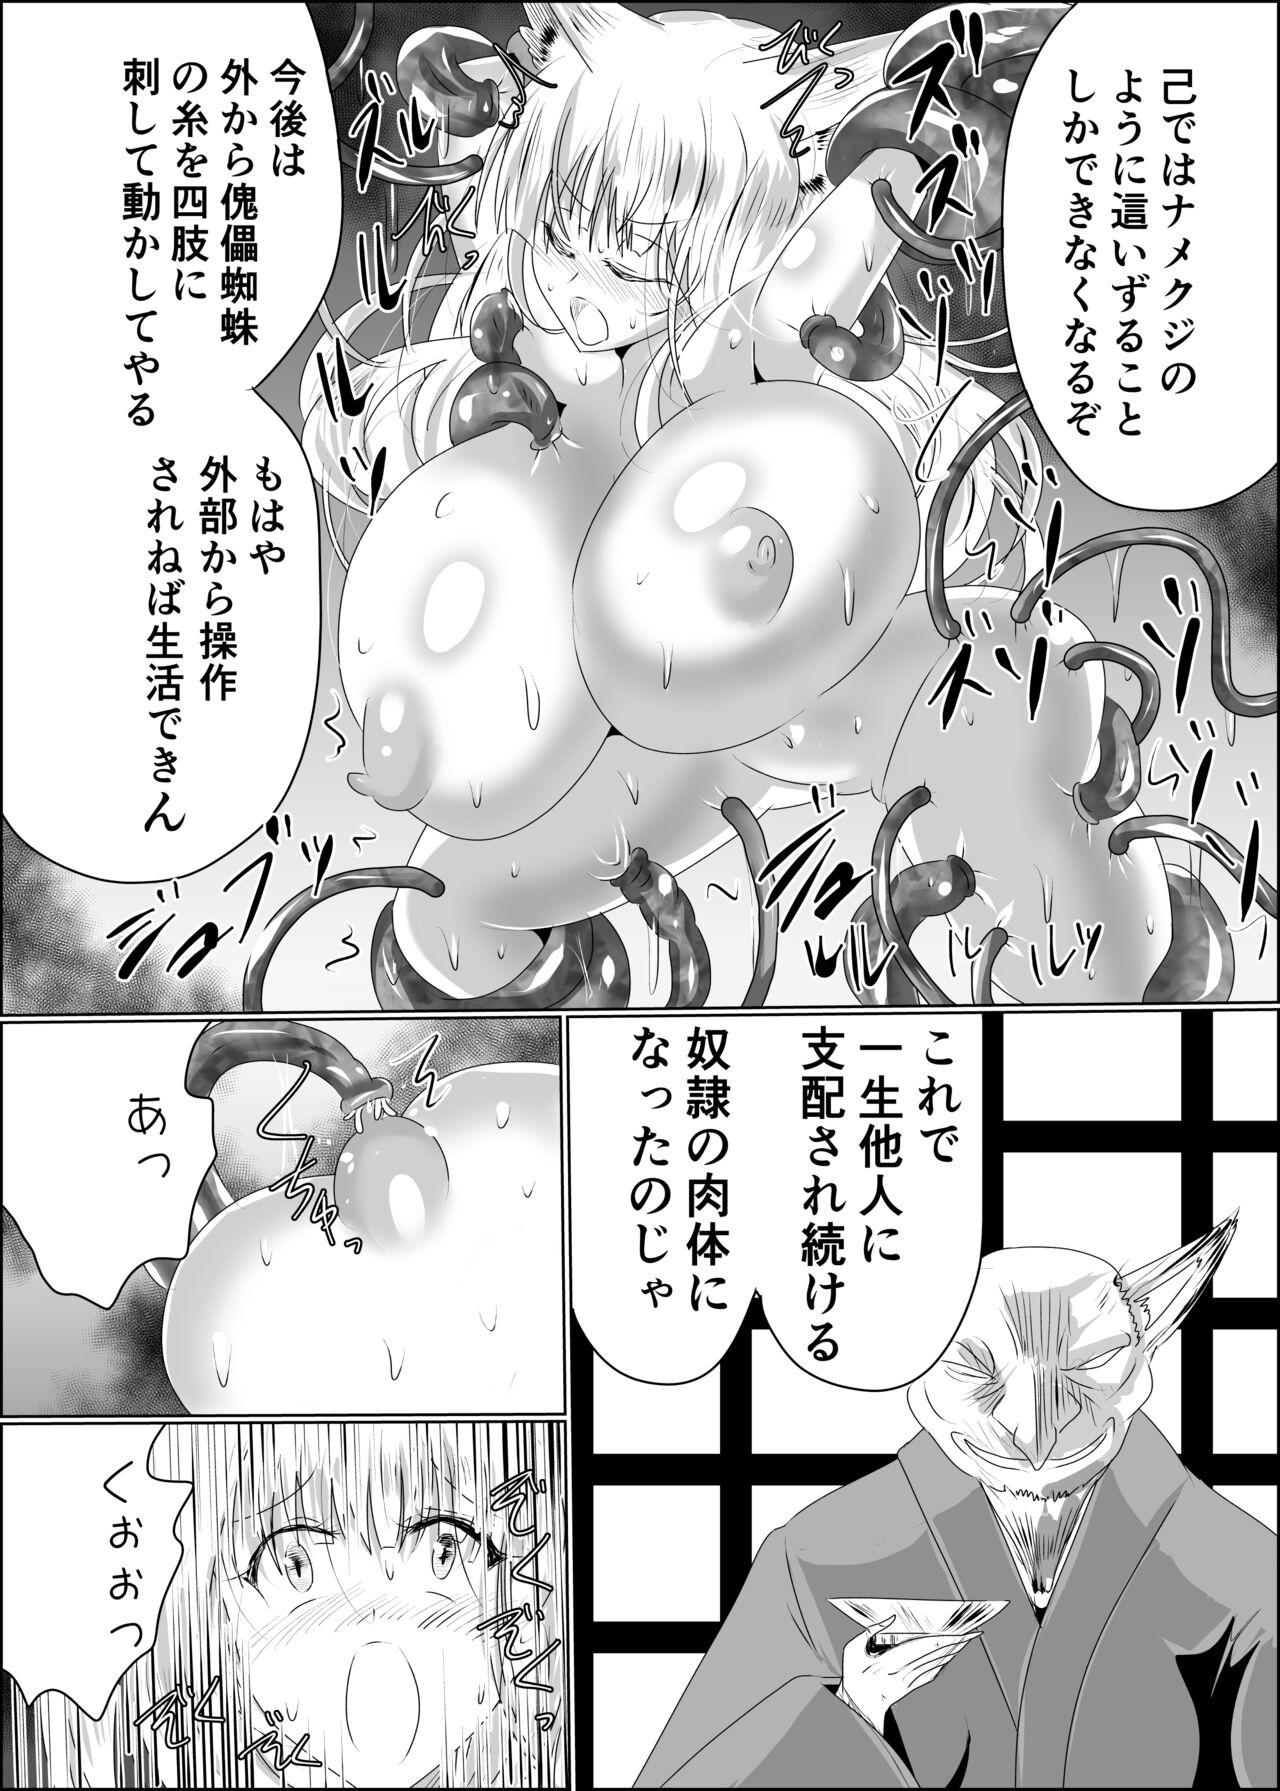 Titten 嫁堕九尾 - Original Reverse - Page 6